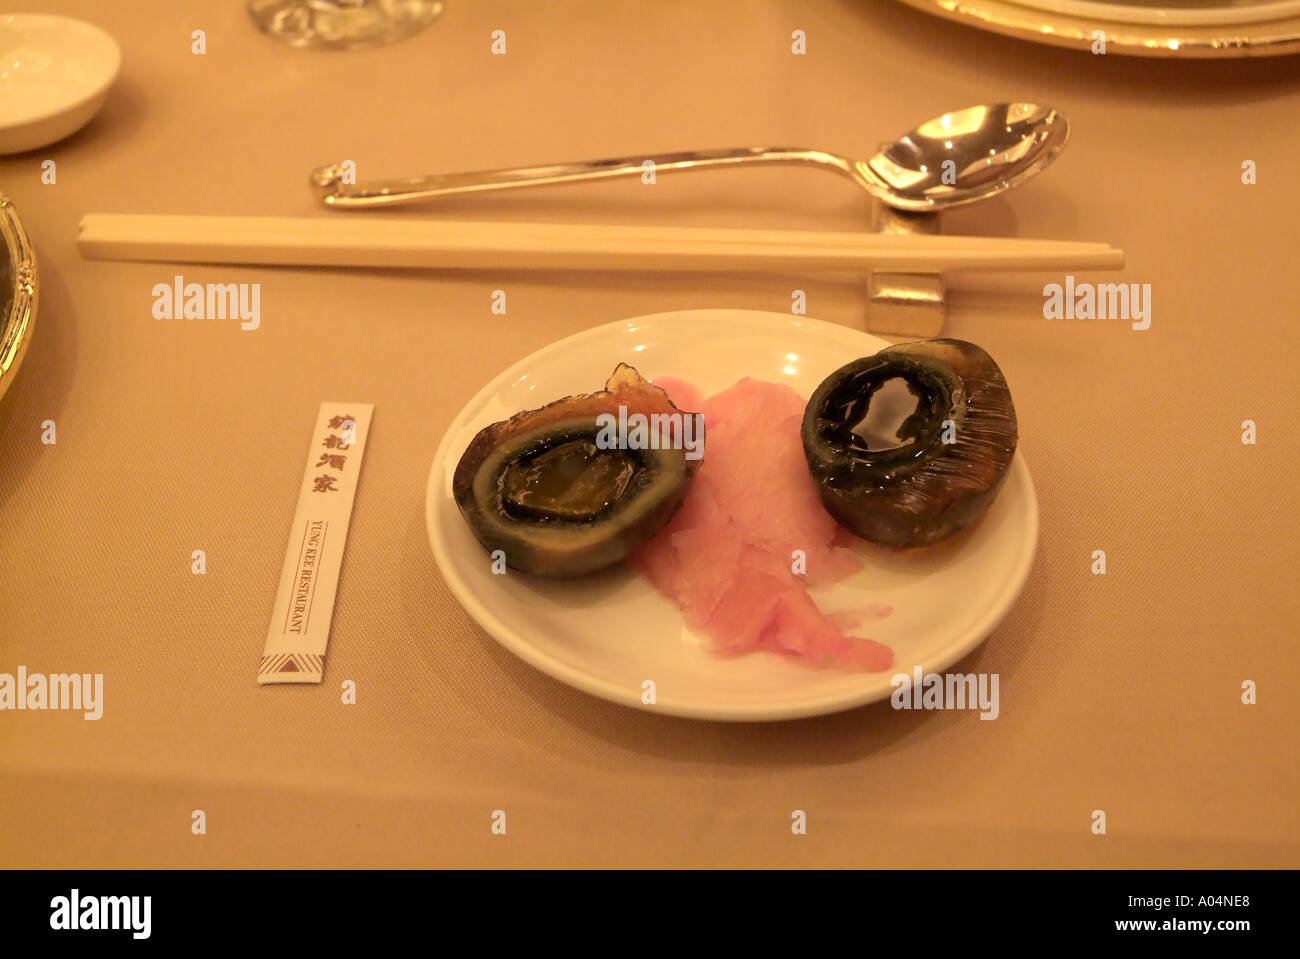 dh Yung Kee ristorante CENTRO DI HONG KONG millenario uova di cavolo sott'uovo chopsticks cucina cinese conserved cibo cina cena cantonese Foto Stock